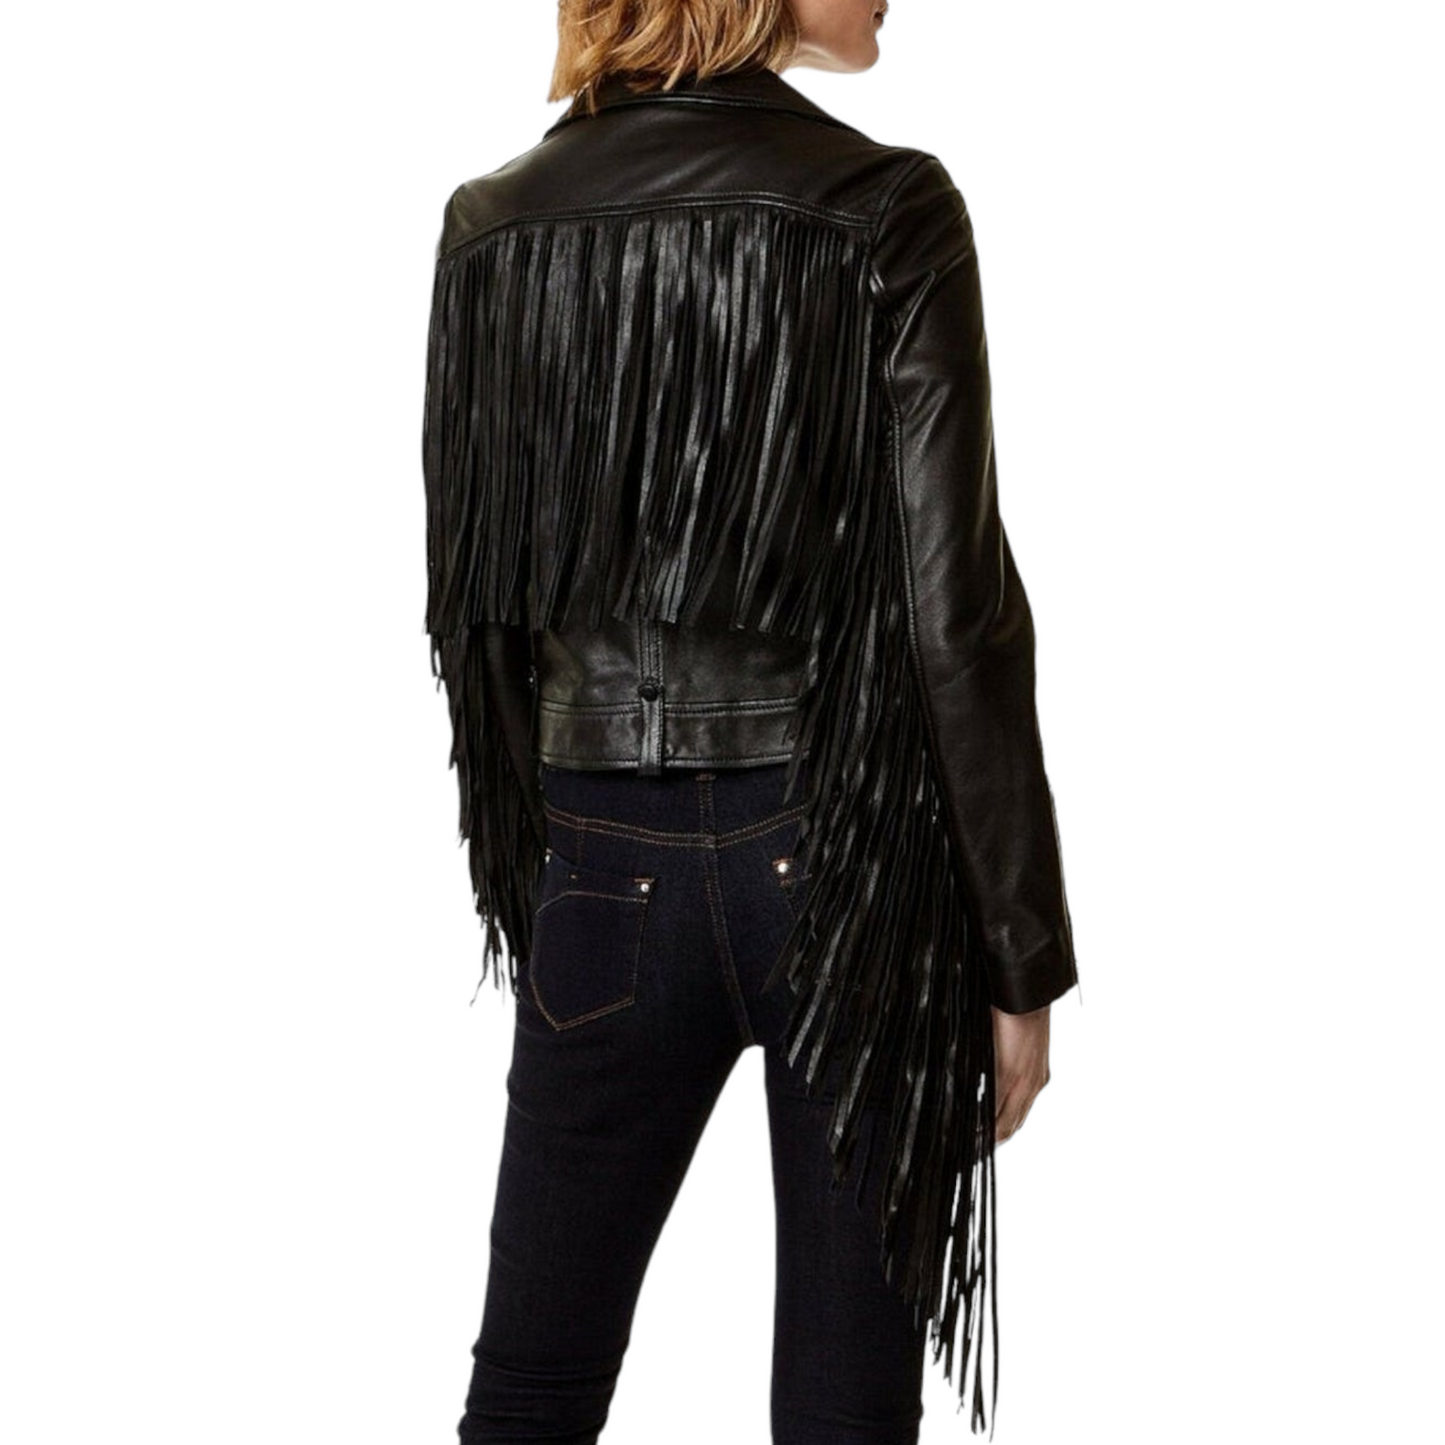 Premium Quality Lambskin Leather Biker Jacket for Women's Leather Jacket Hippie Style Girls Coat Fringe Leather Jacket